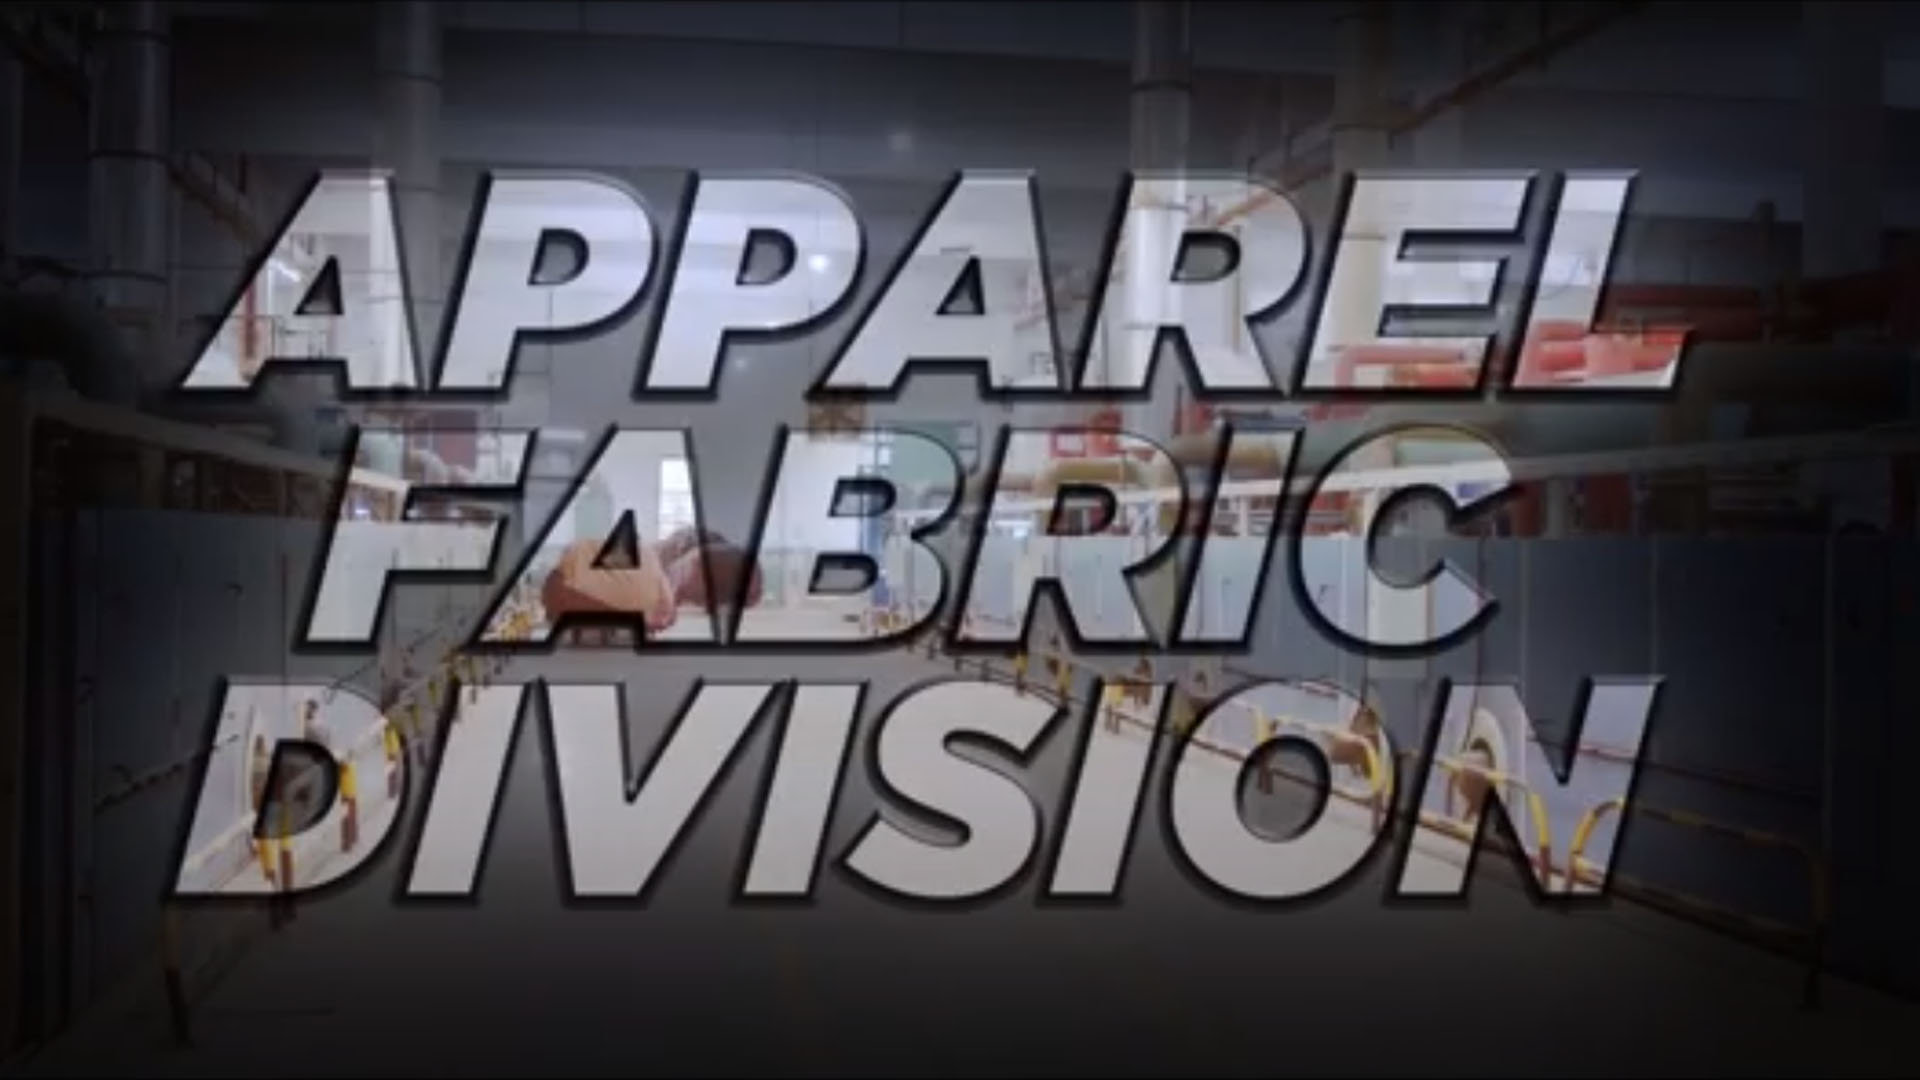 Apparel Fabric Division